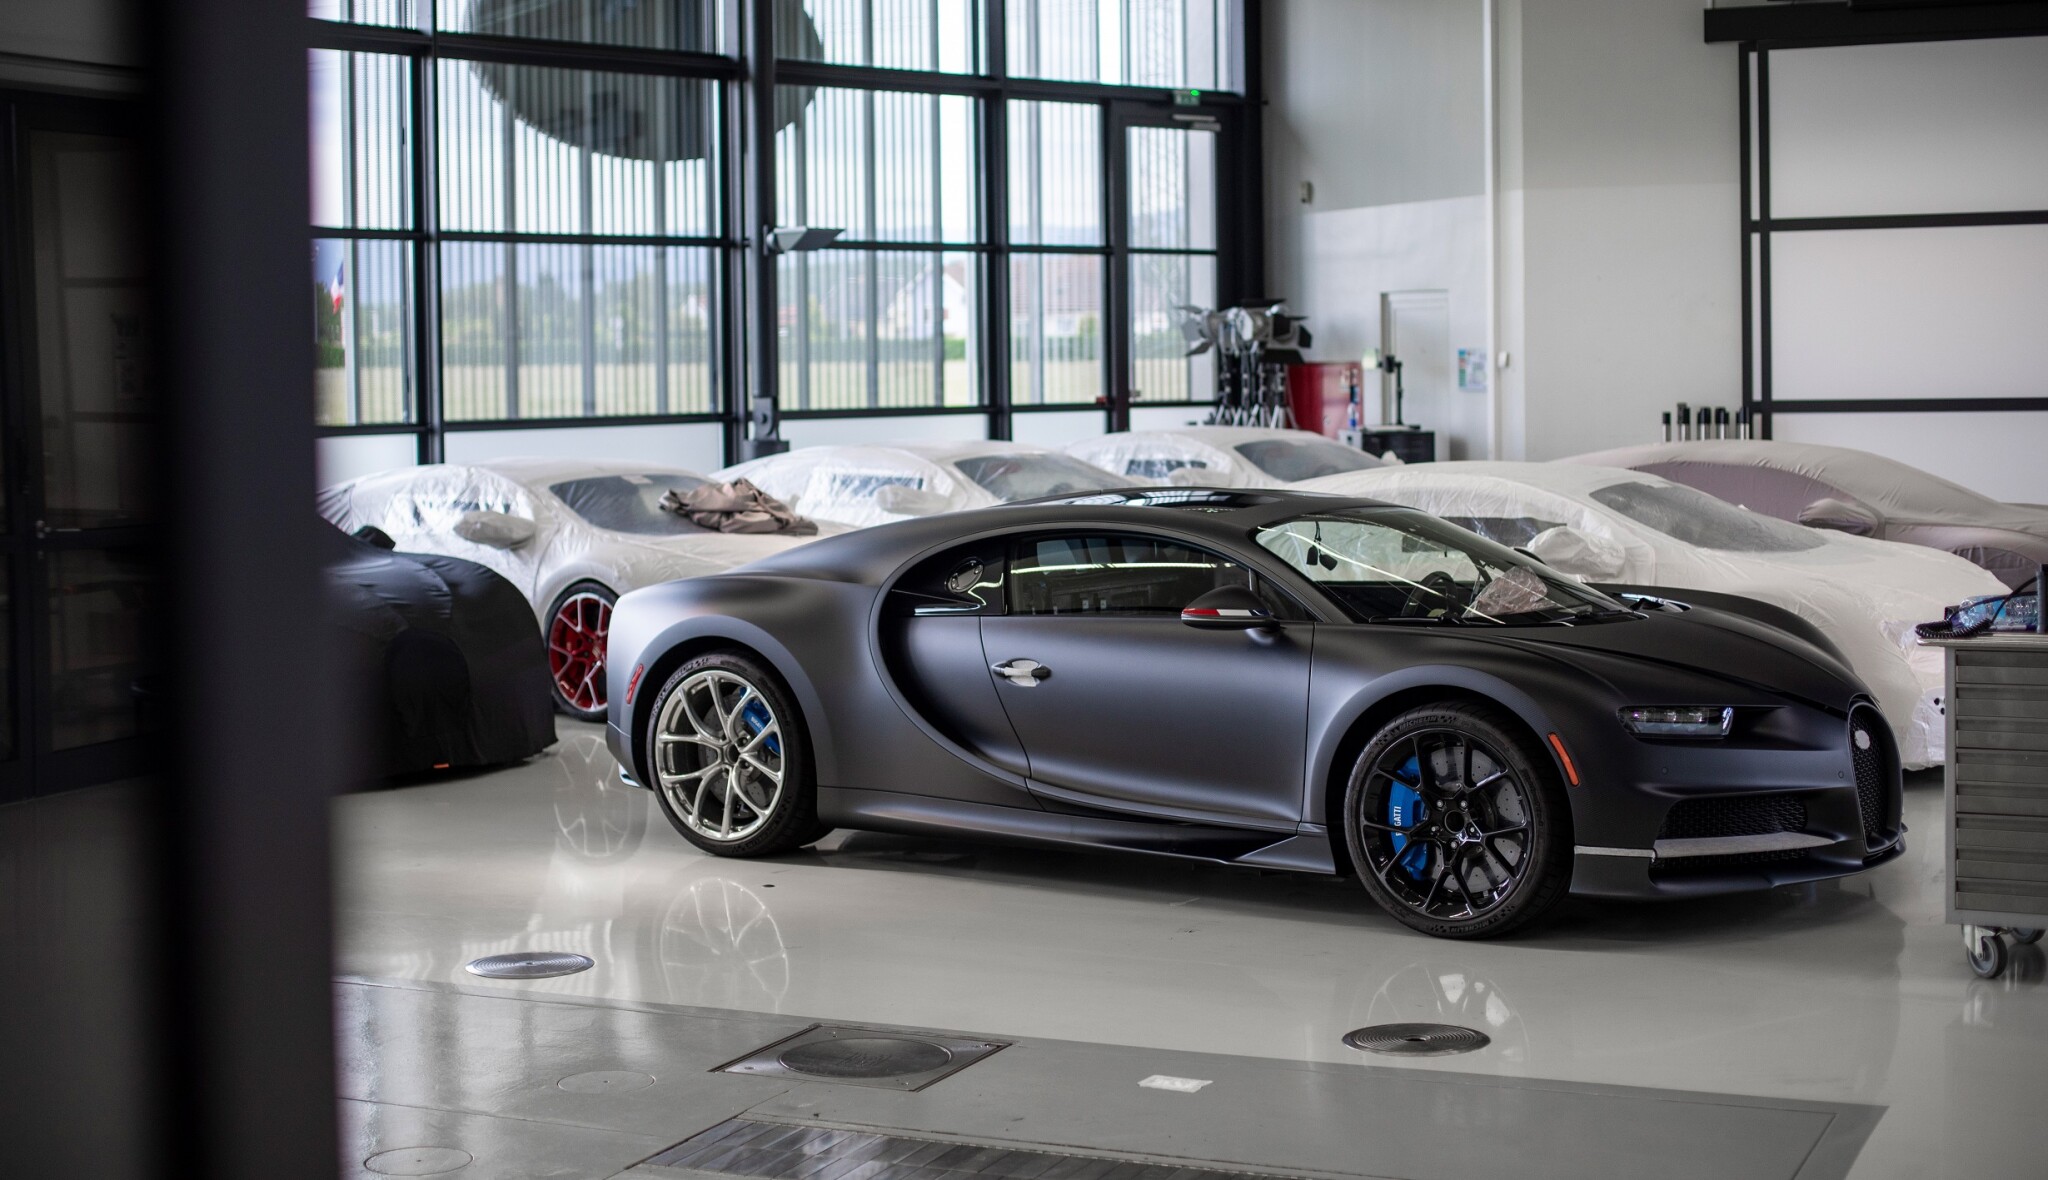 Bugatti vyrobilo už 200 chironů. Nejrychlejší auto světa jezdí i v Česku